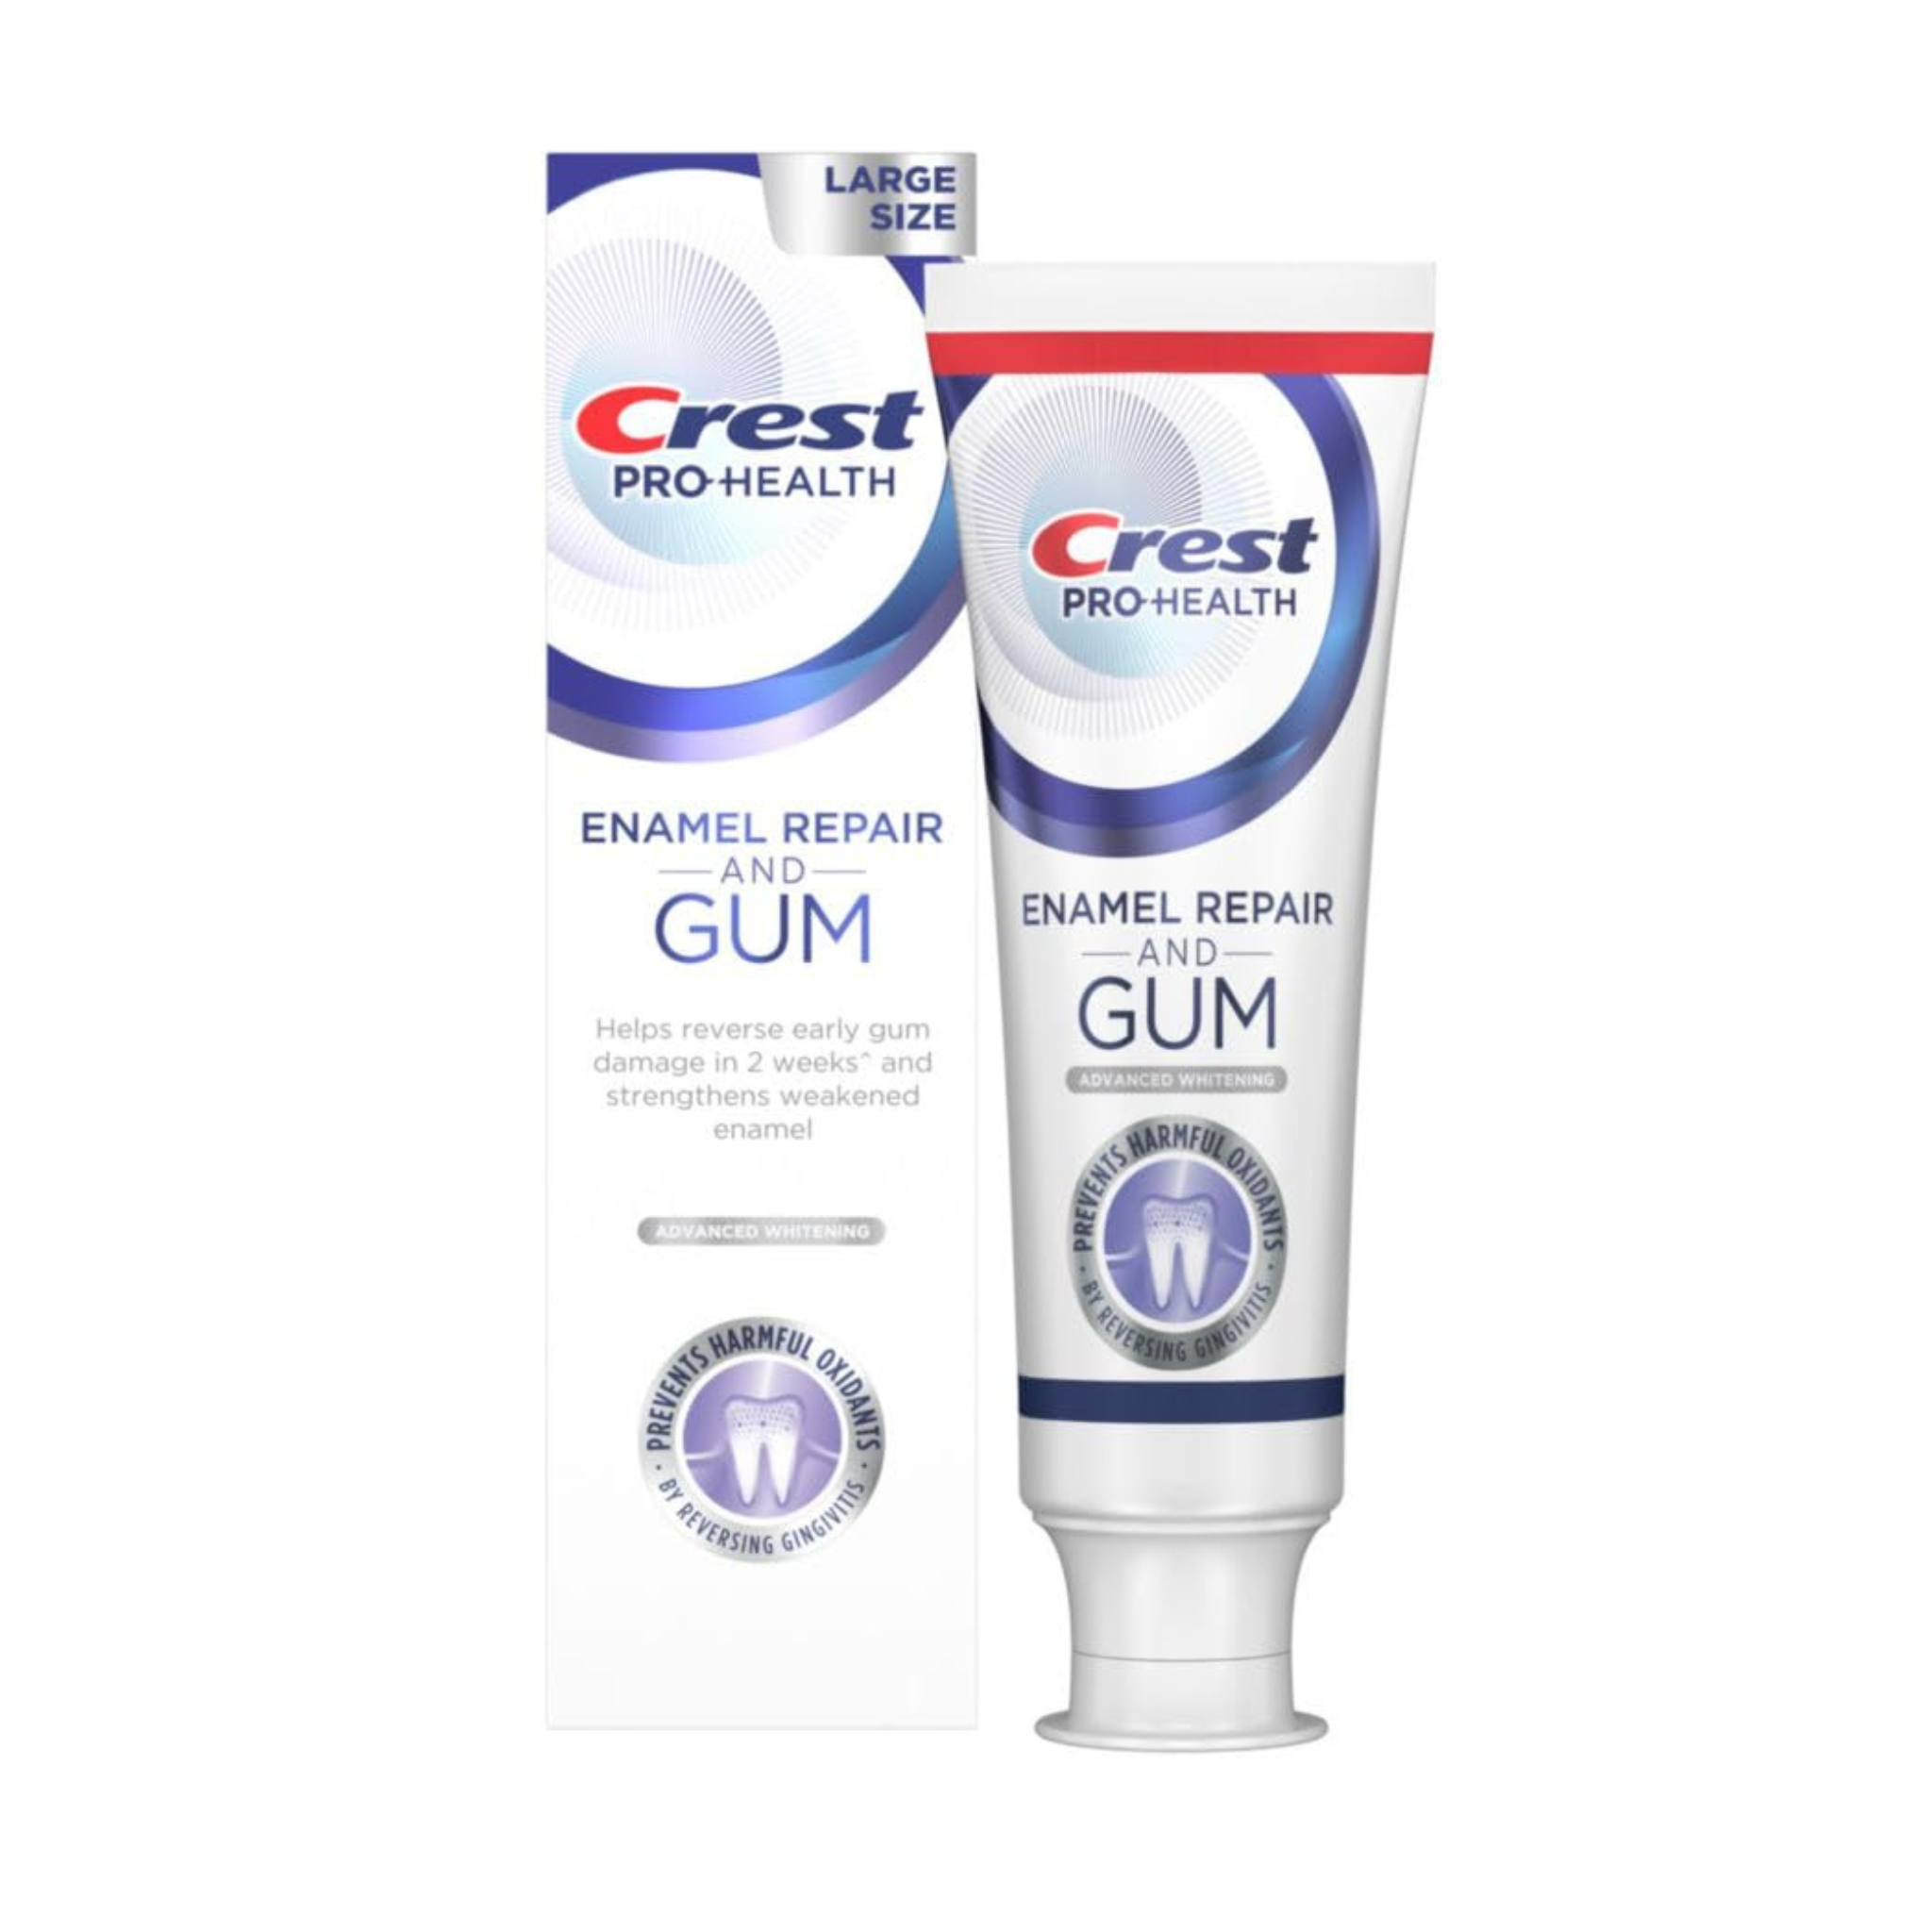 Crest Pro-Health Enamel Repair and Gum Anticavity Toothpaste, 4.8 oz